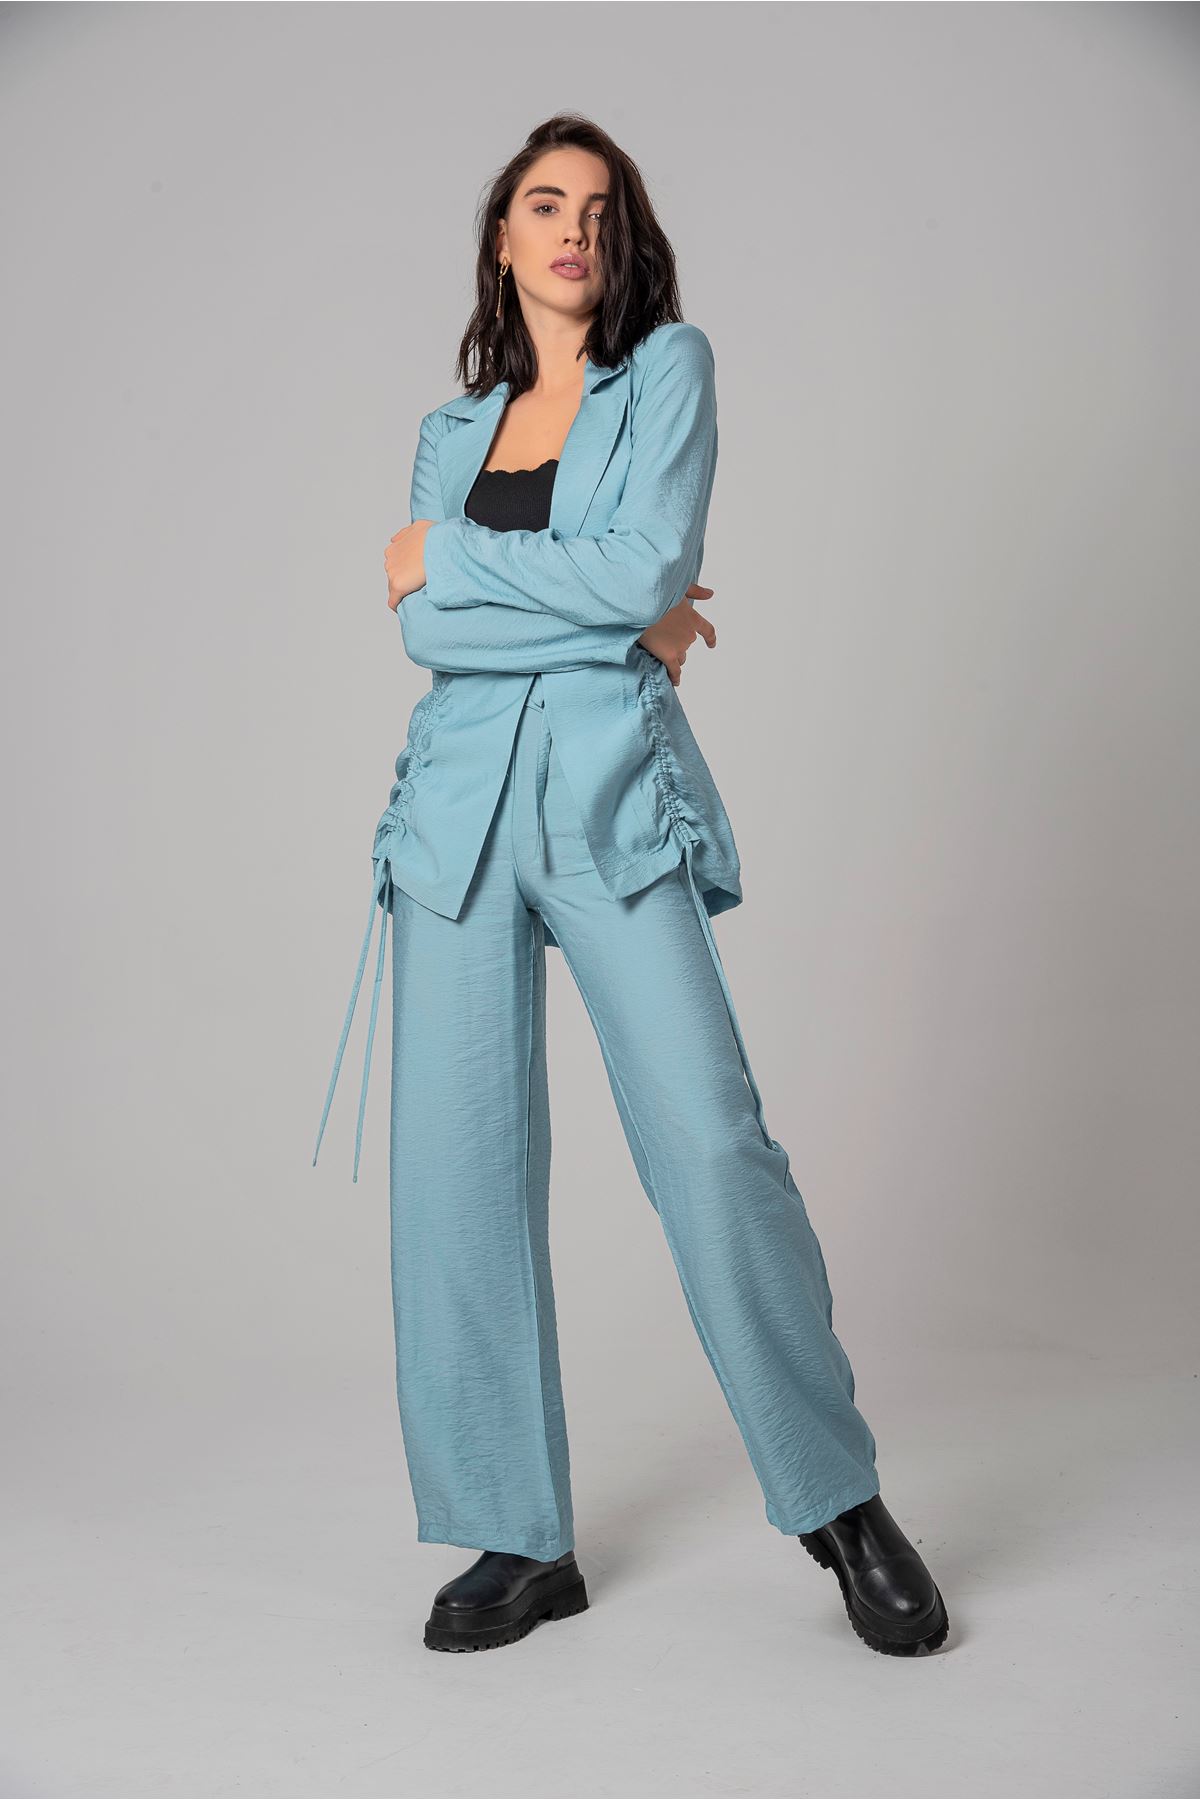 полиэстер ткань ревер воротник женский пиджак - Синий